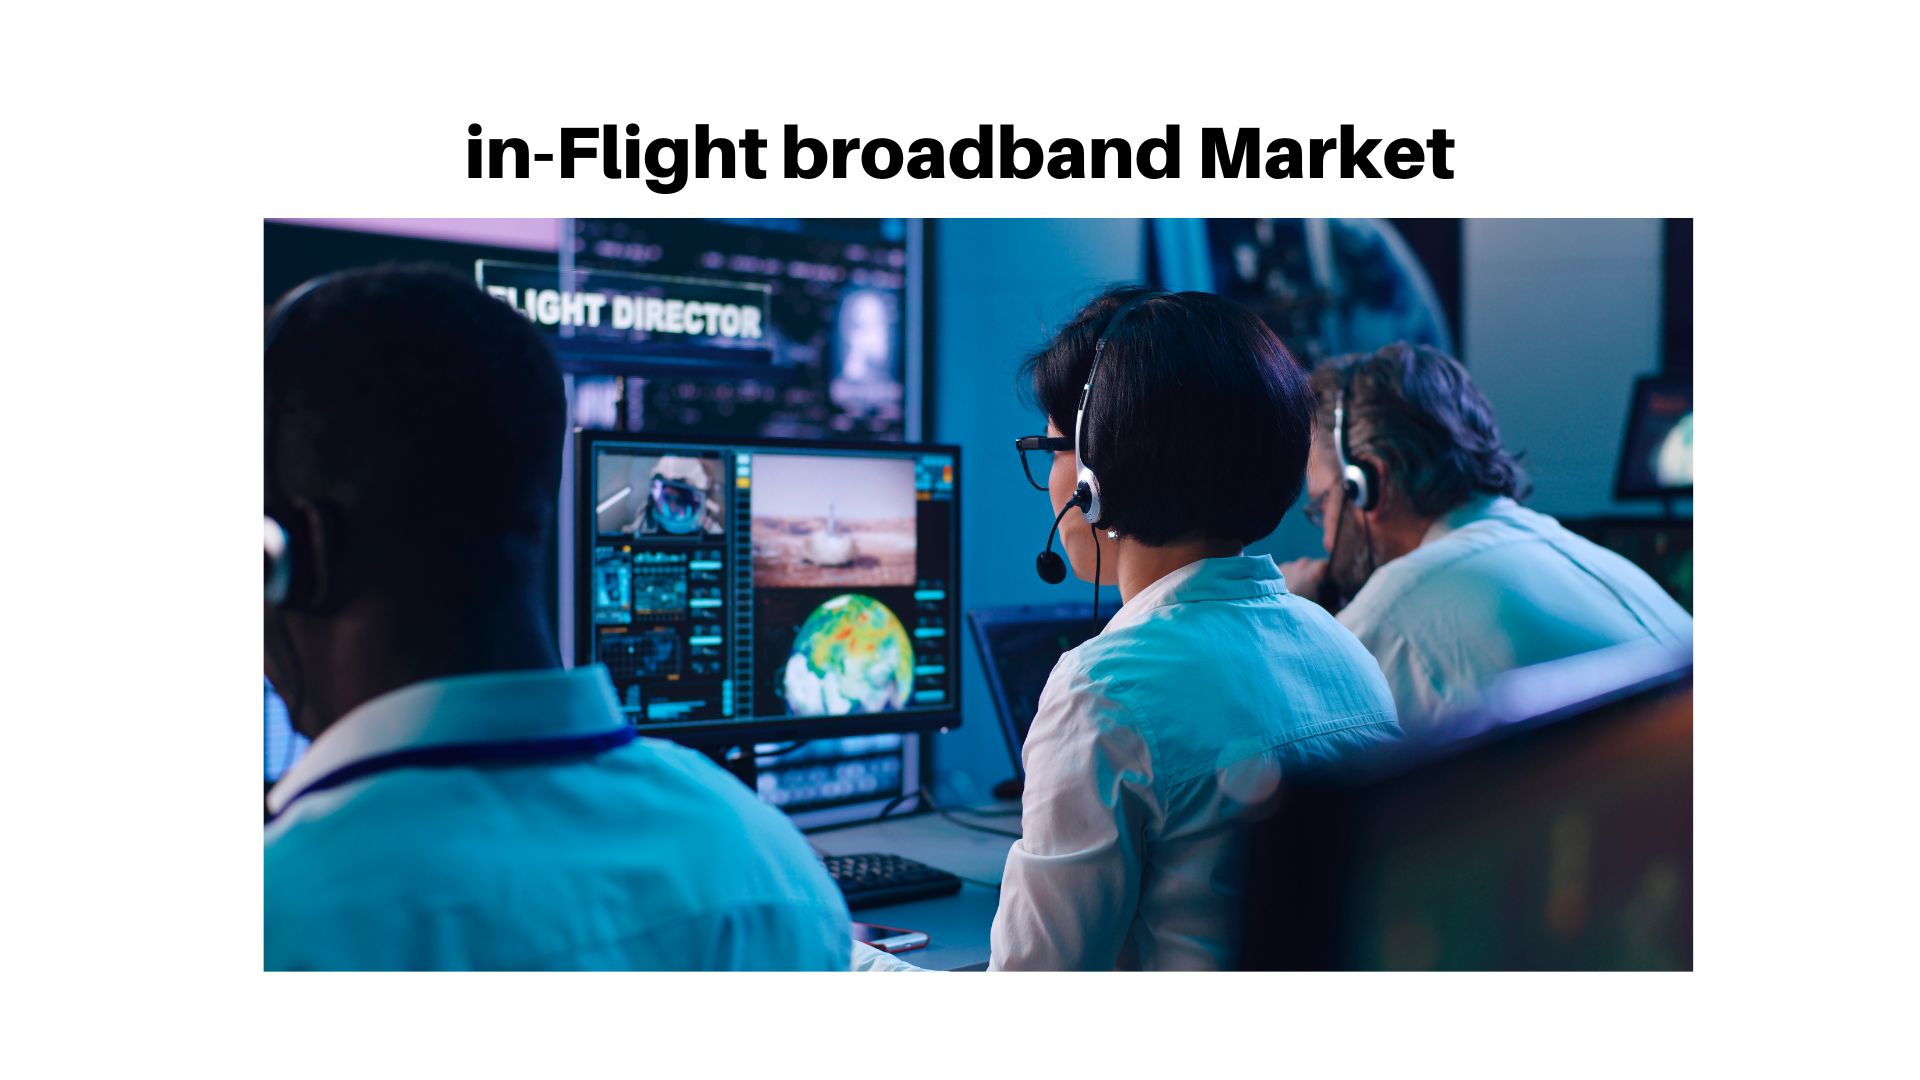 In-Flight Broadband Market is projected to reach USD 6.76 Billion by 2032